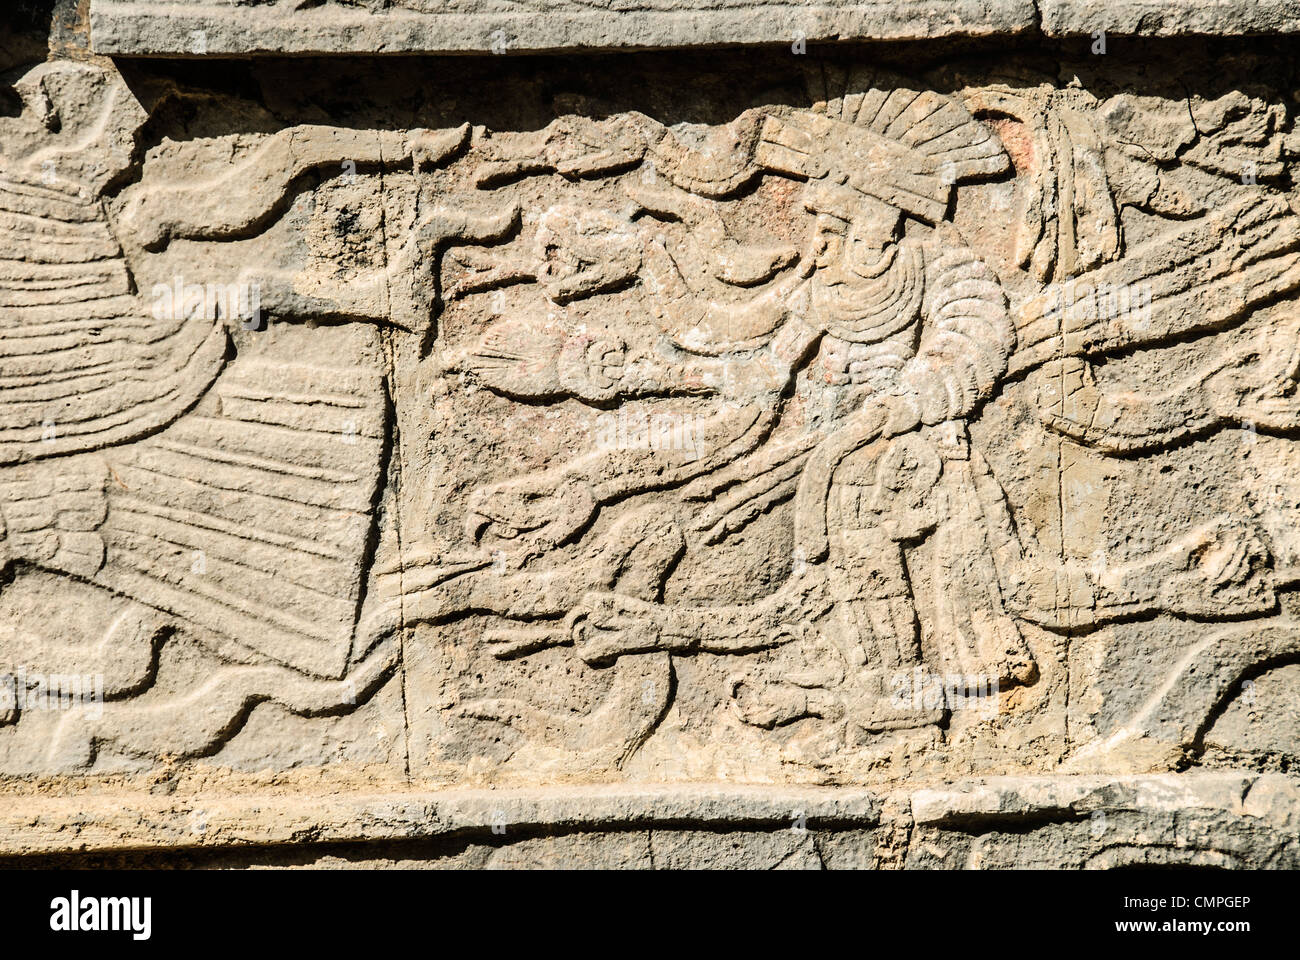 CHICHEN ITZA, Mexique - une sculpture dans un mur de pierre représentant un guerrier maya à Chichen Itza, au Mexique. Banque D'Images